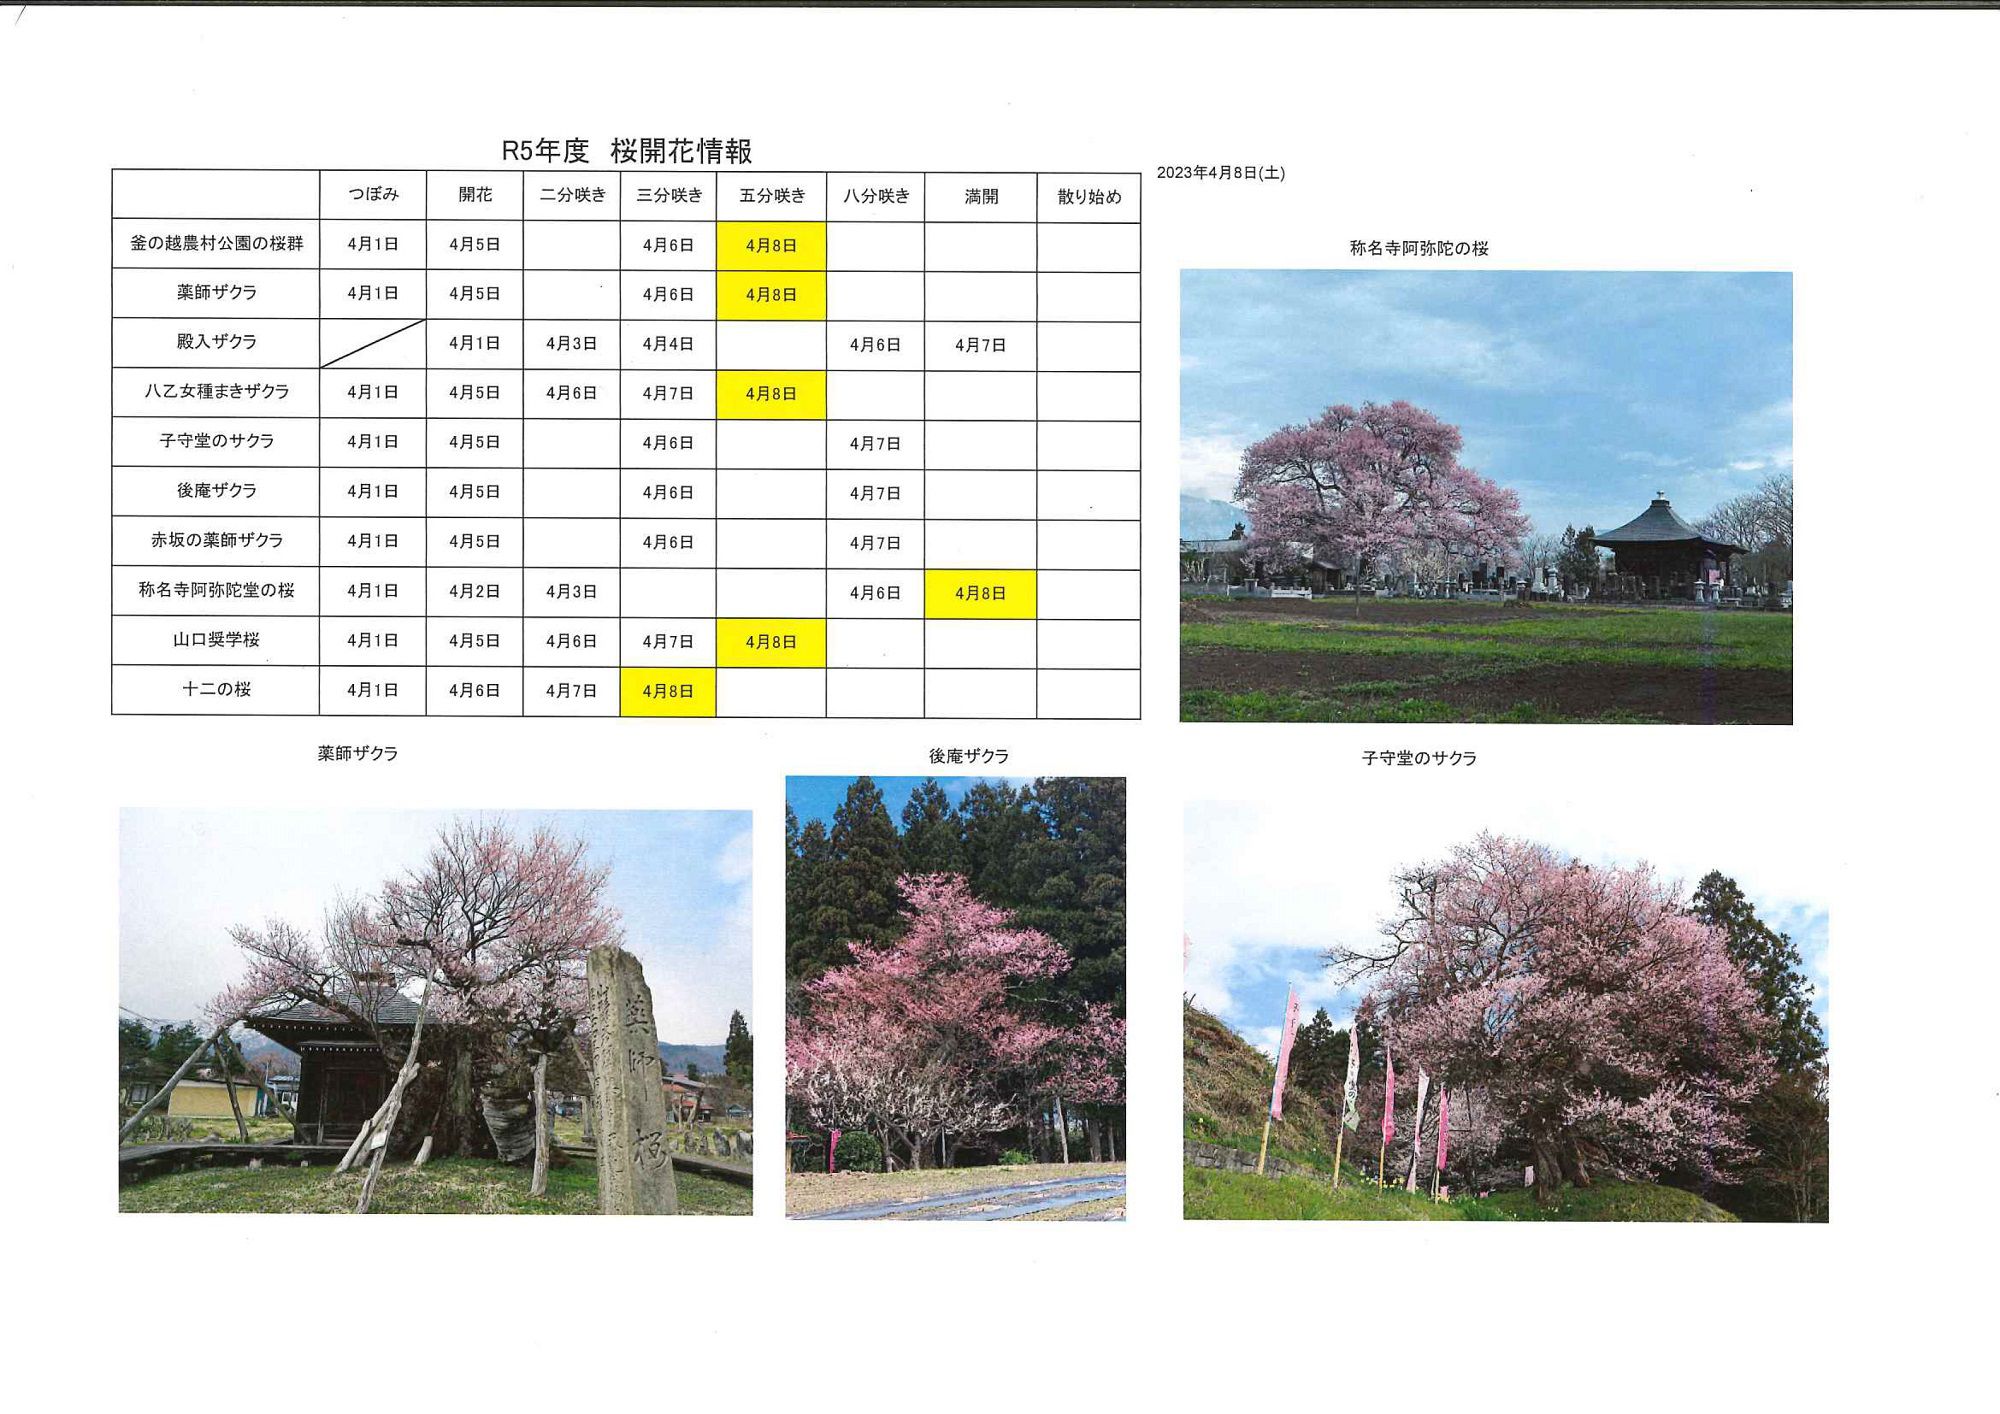 4月8日桜開花情報